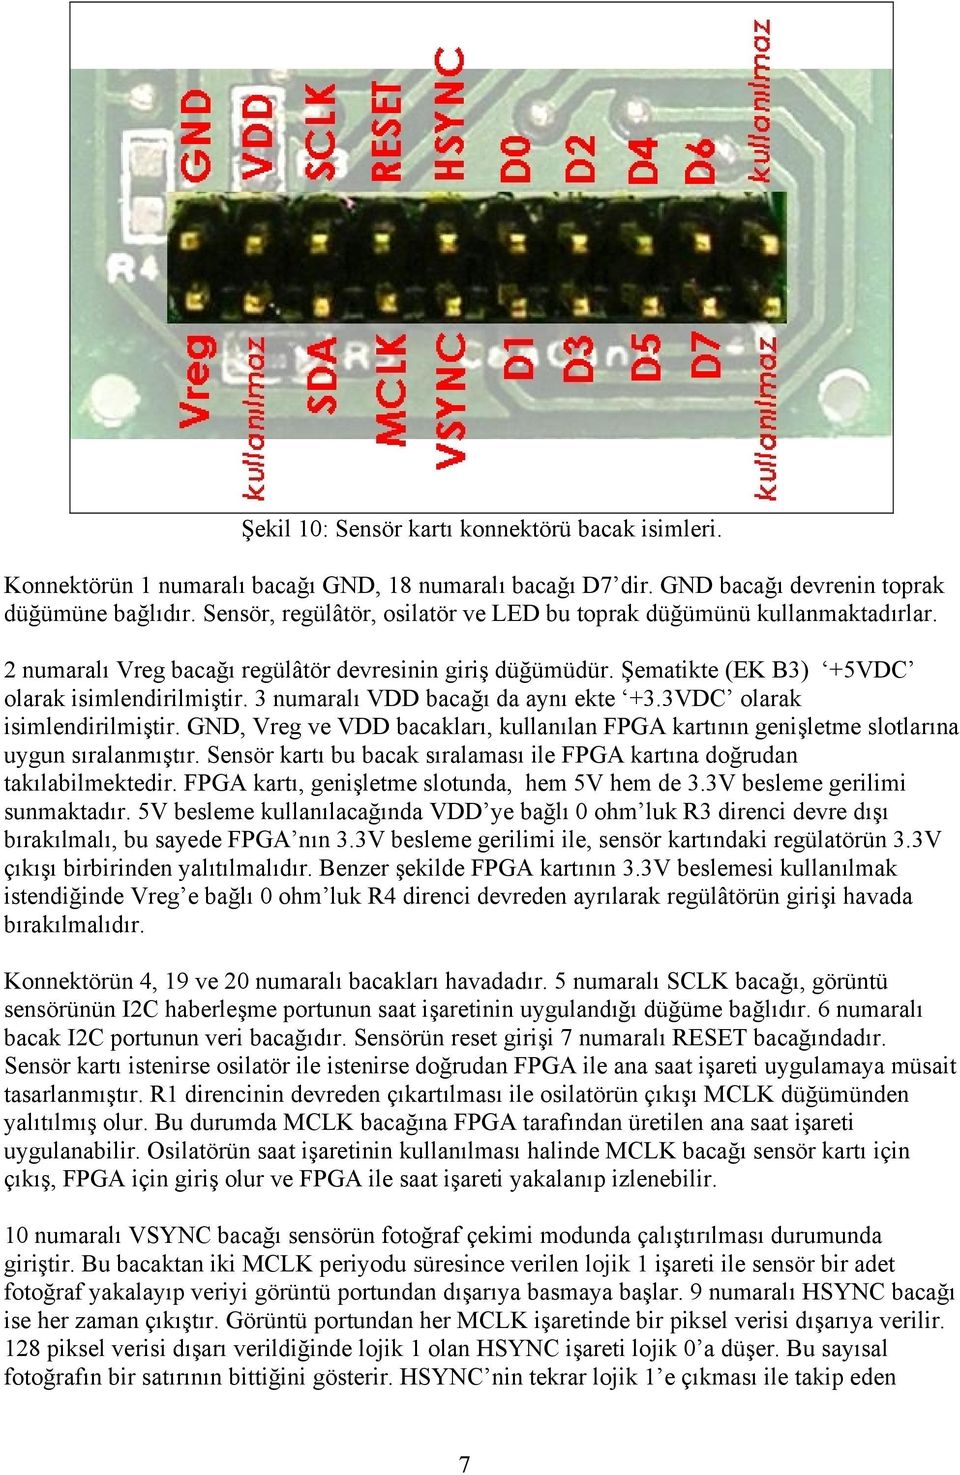 3 numaralı VDD bacağı da aynı ekte +3.3VDC olarak isimlendirilmiştir. GND, Vreg ve VDD bacakları, kullanılan FPGA kartının genişletme slotlarına uygun sıralanmıştır.